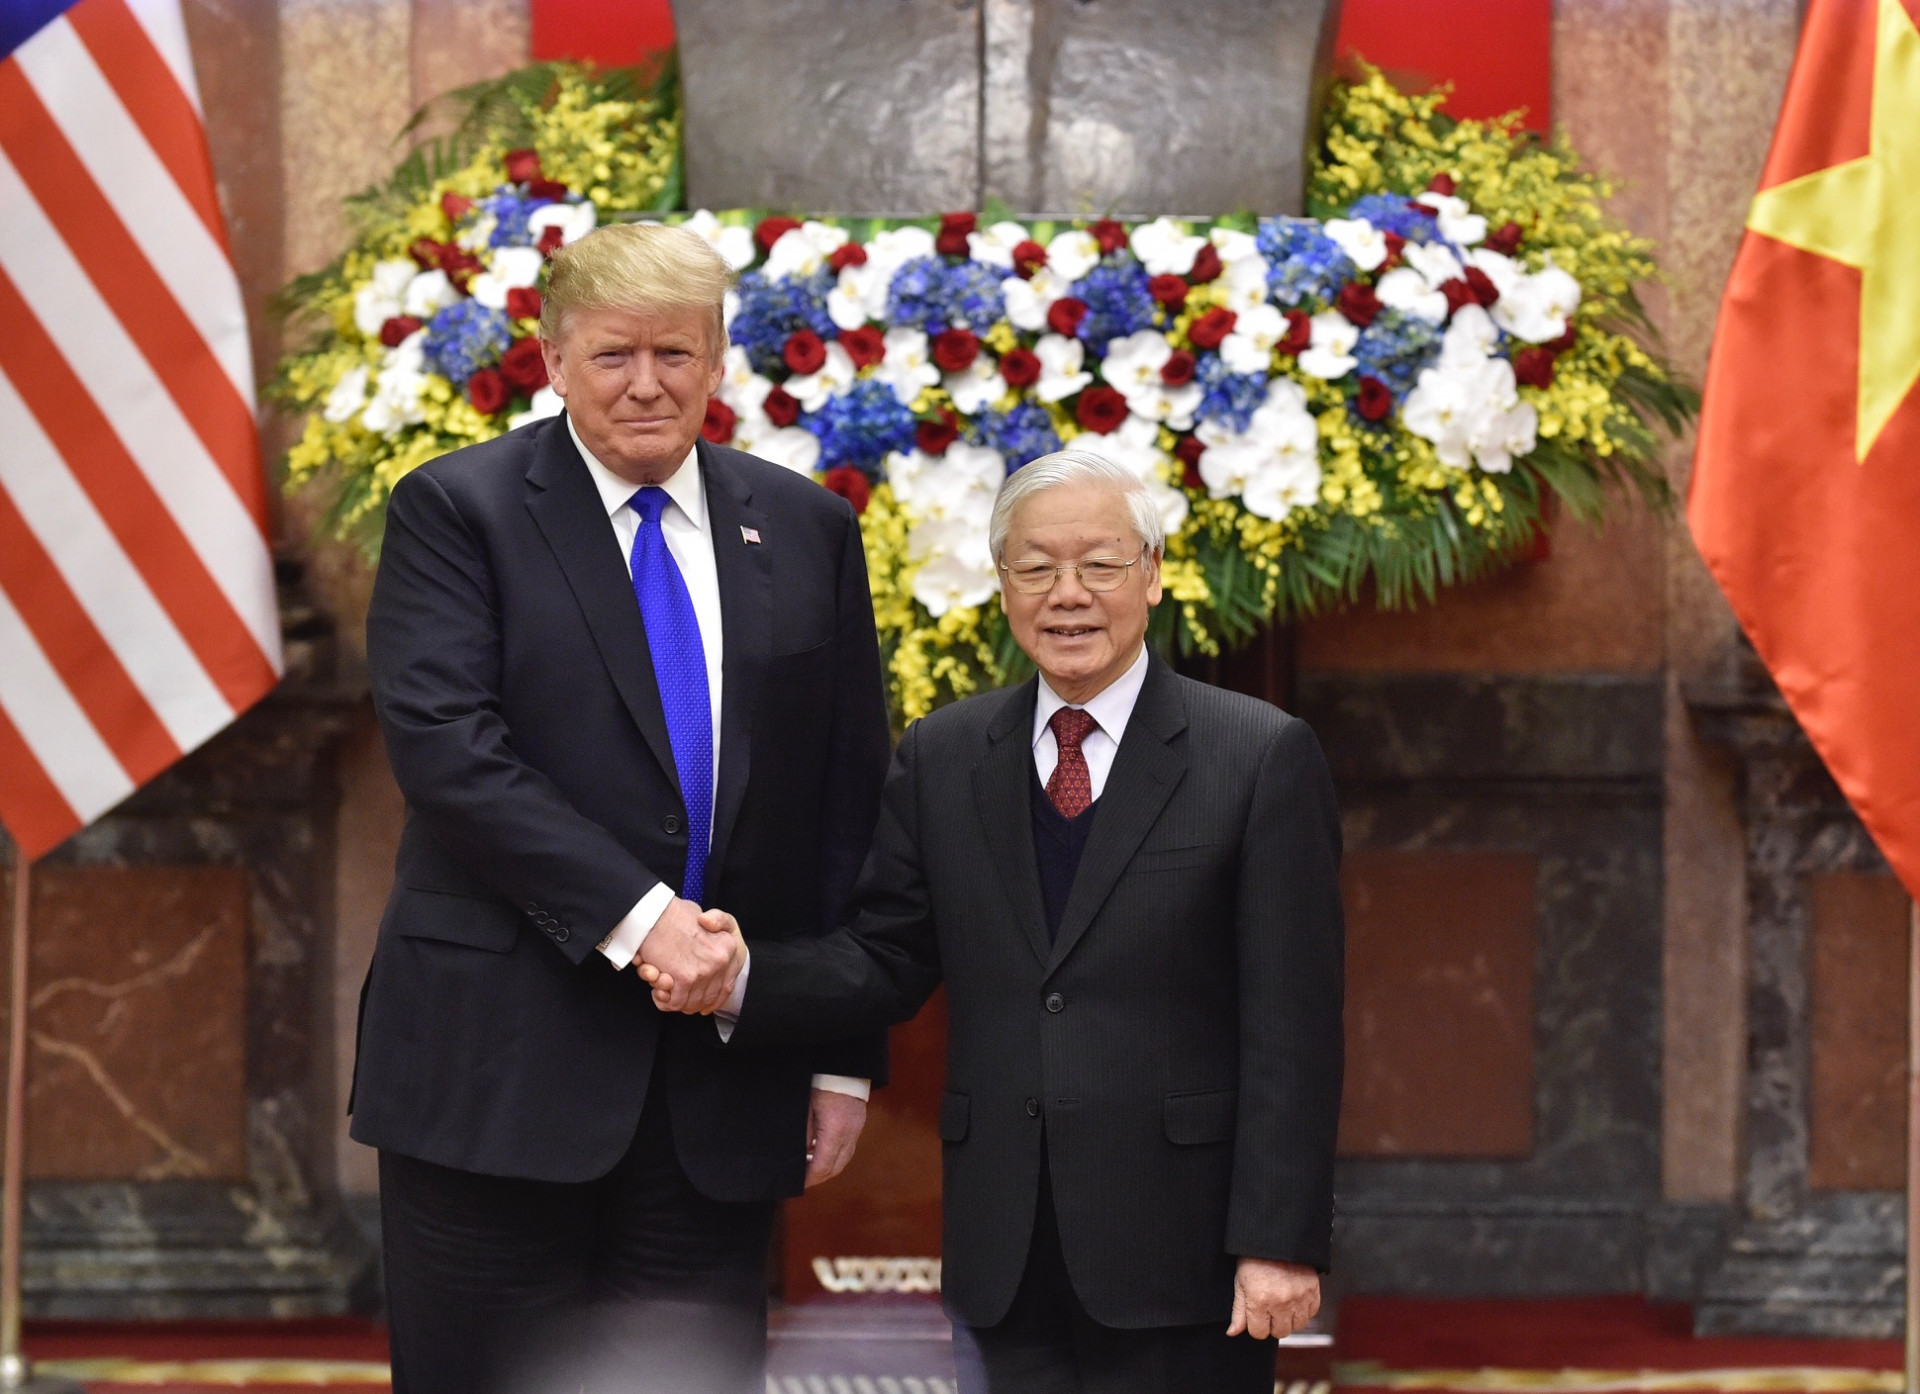 Tổng Bí thư, Chủ tịch nước Nguyễn Phú Trọng tiếp Tổng thống Mỹ Donald Trump, ngày 27/2/2019. - Ảnh: VGP/Nhật Bắc